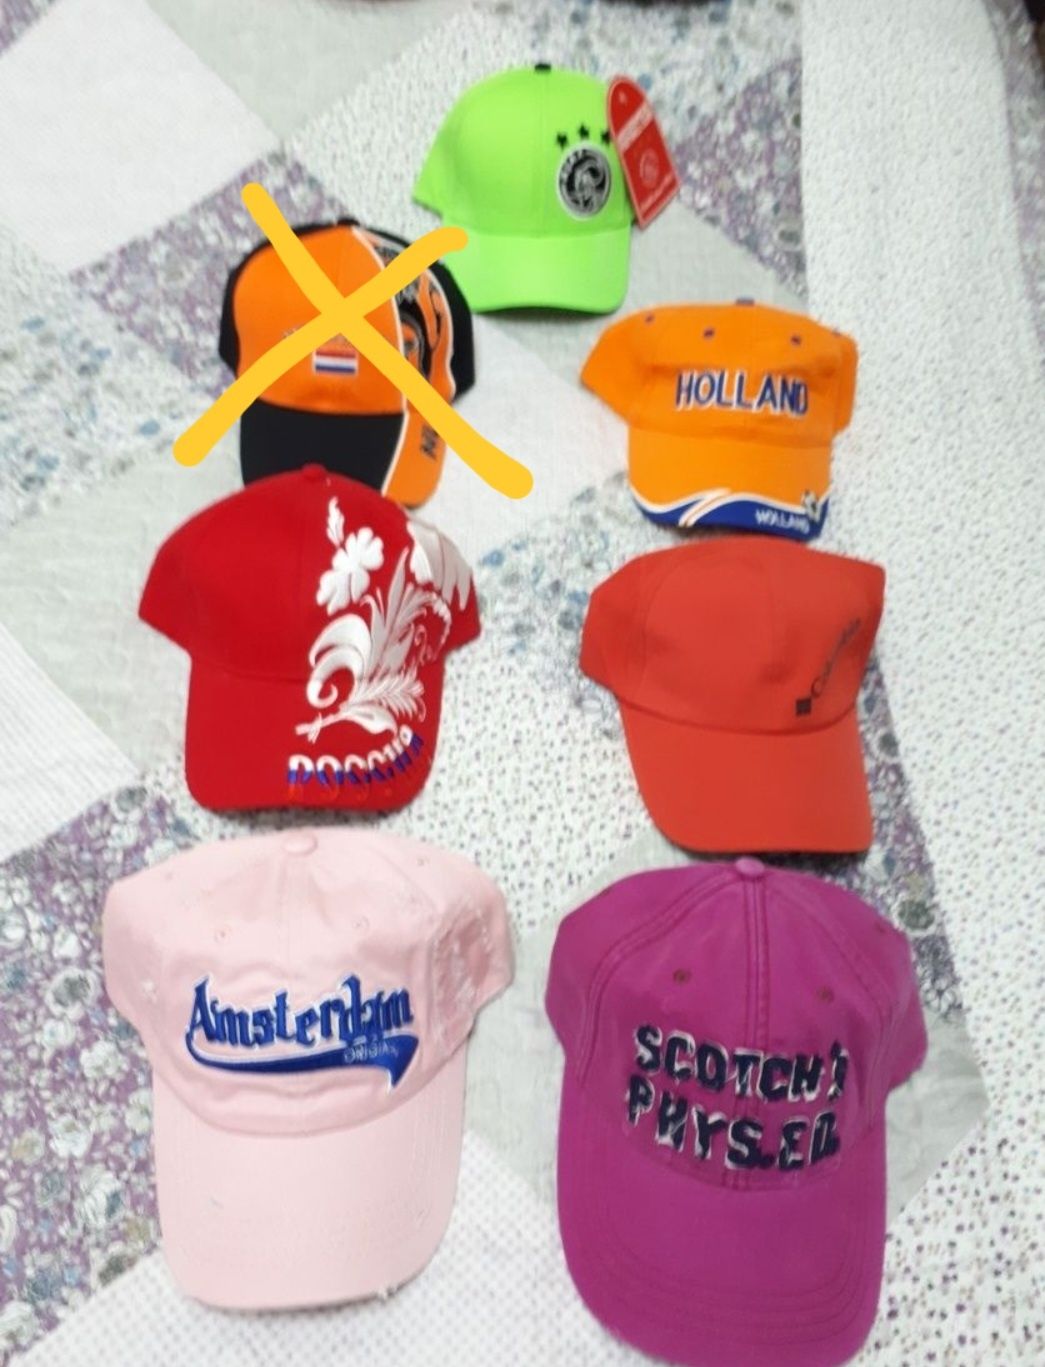 Шляпы-кепки разные фасоны женские и мужские